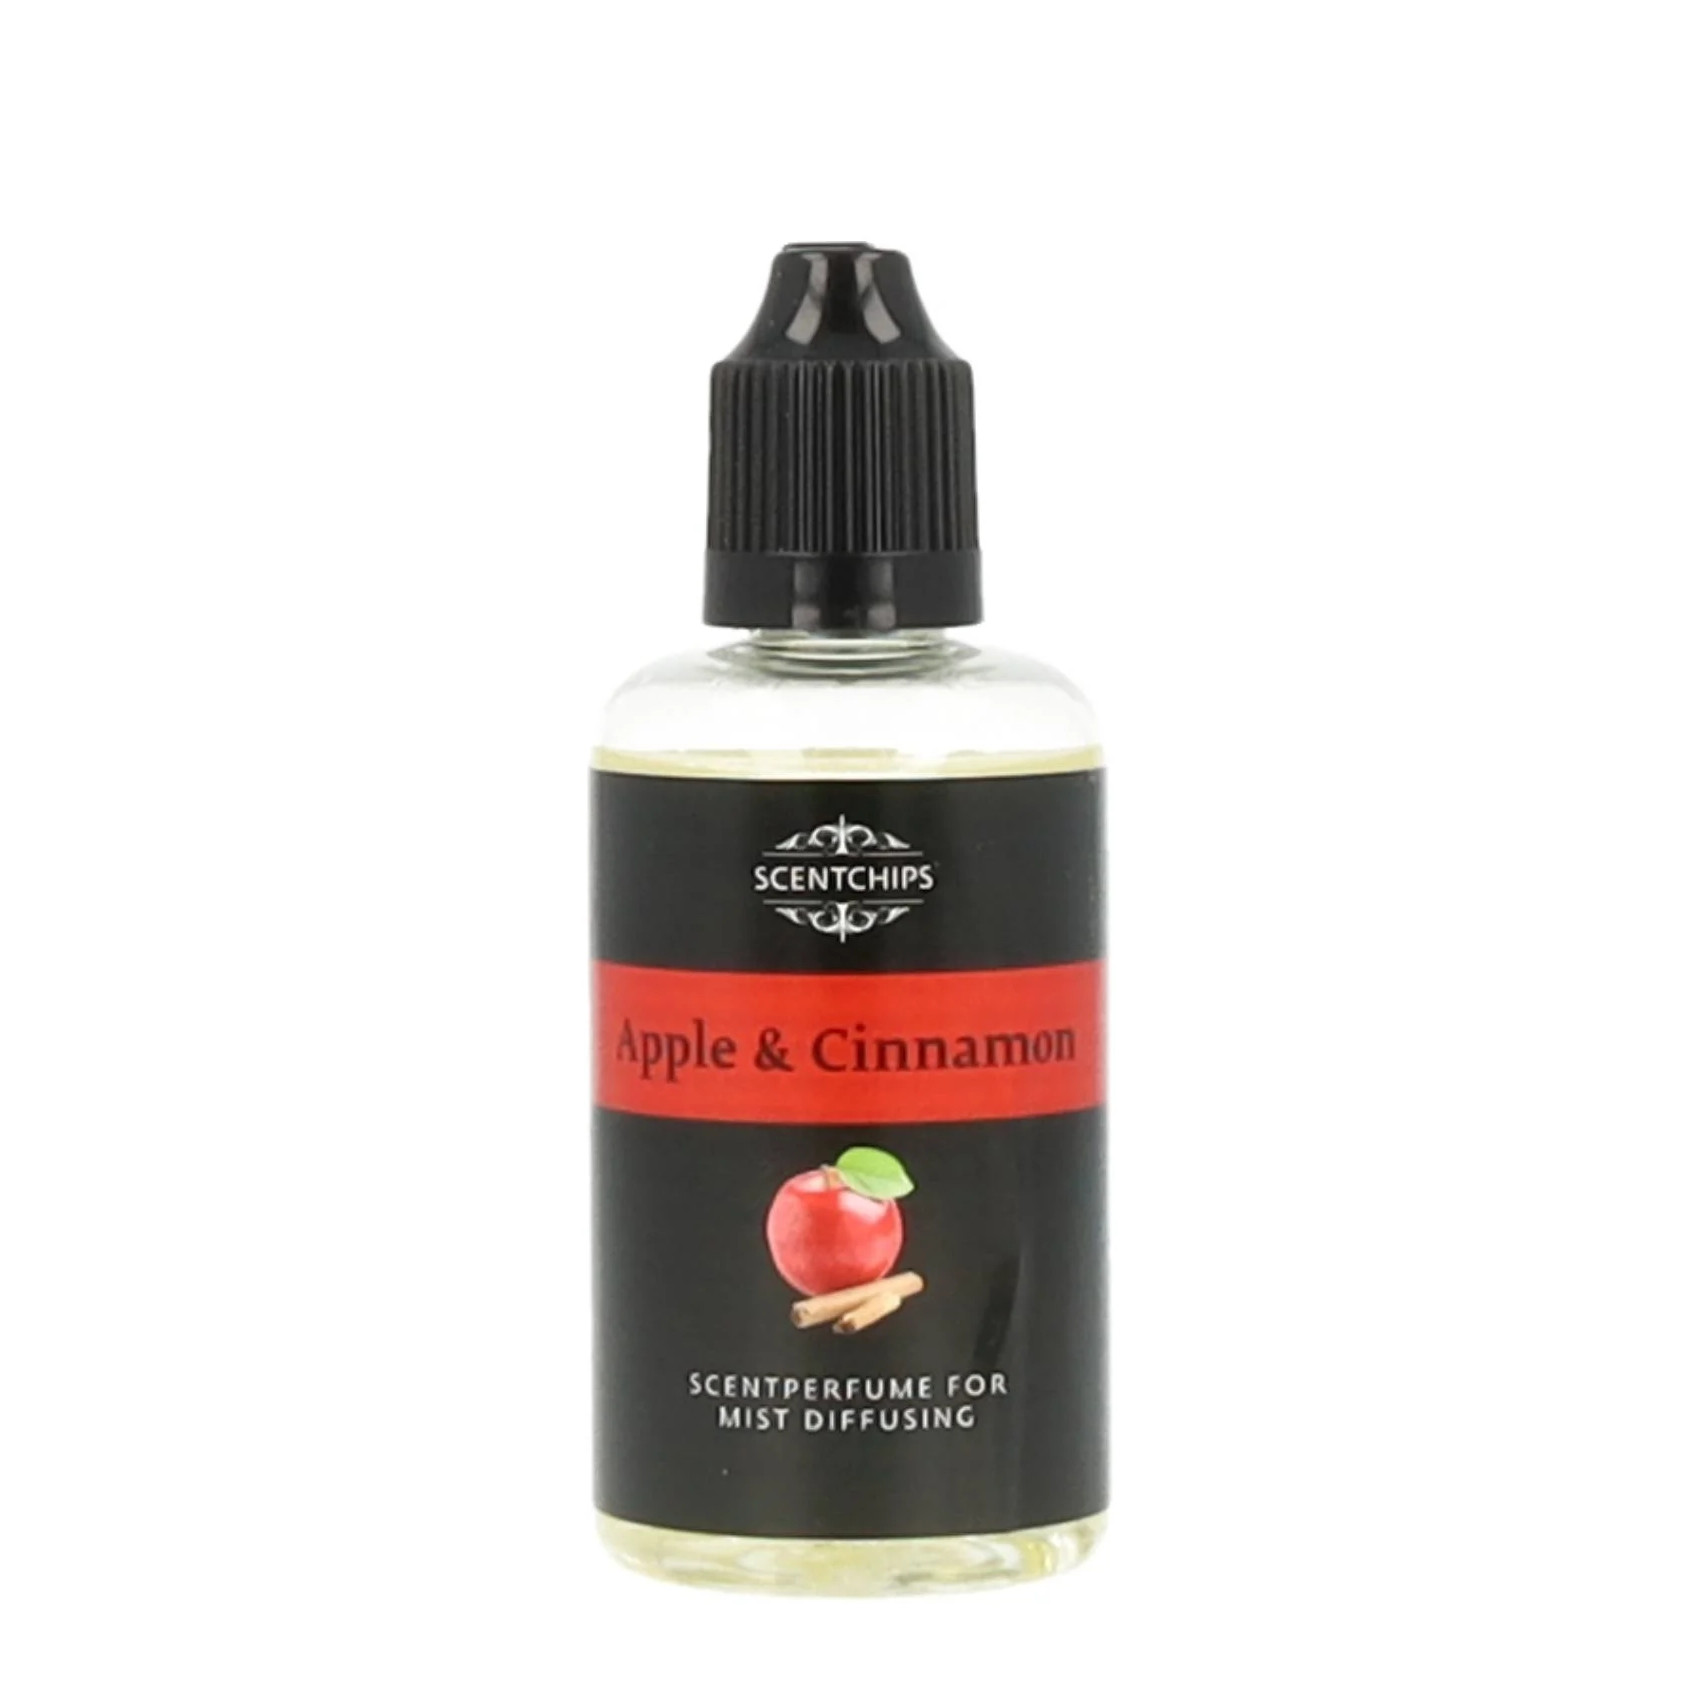 Apple Cinnamon 50ml geurolie parfum voor diffuser – ScentChips